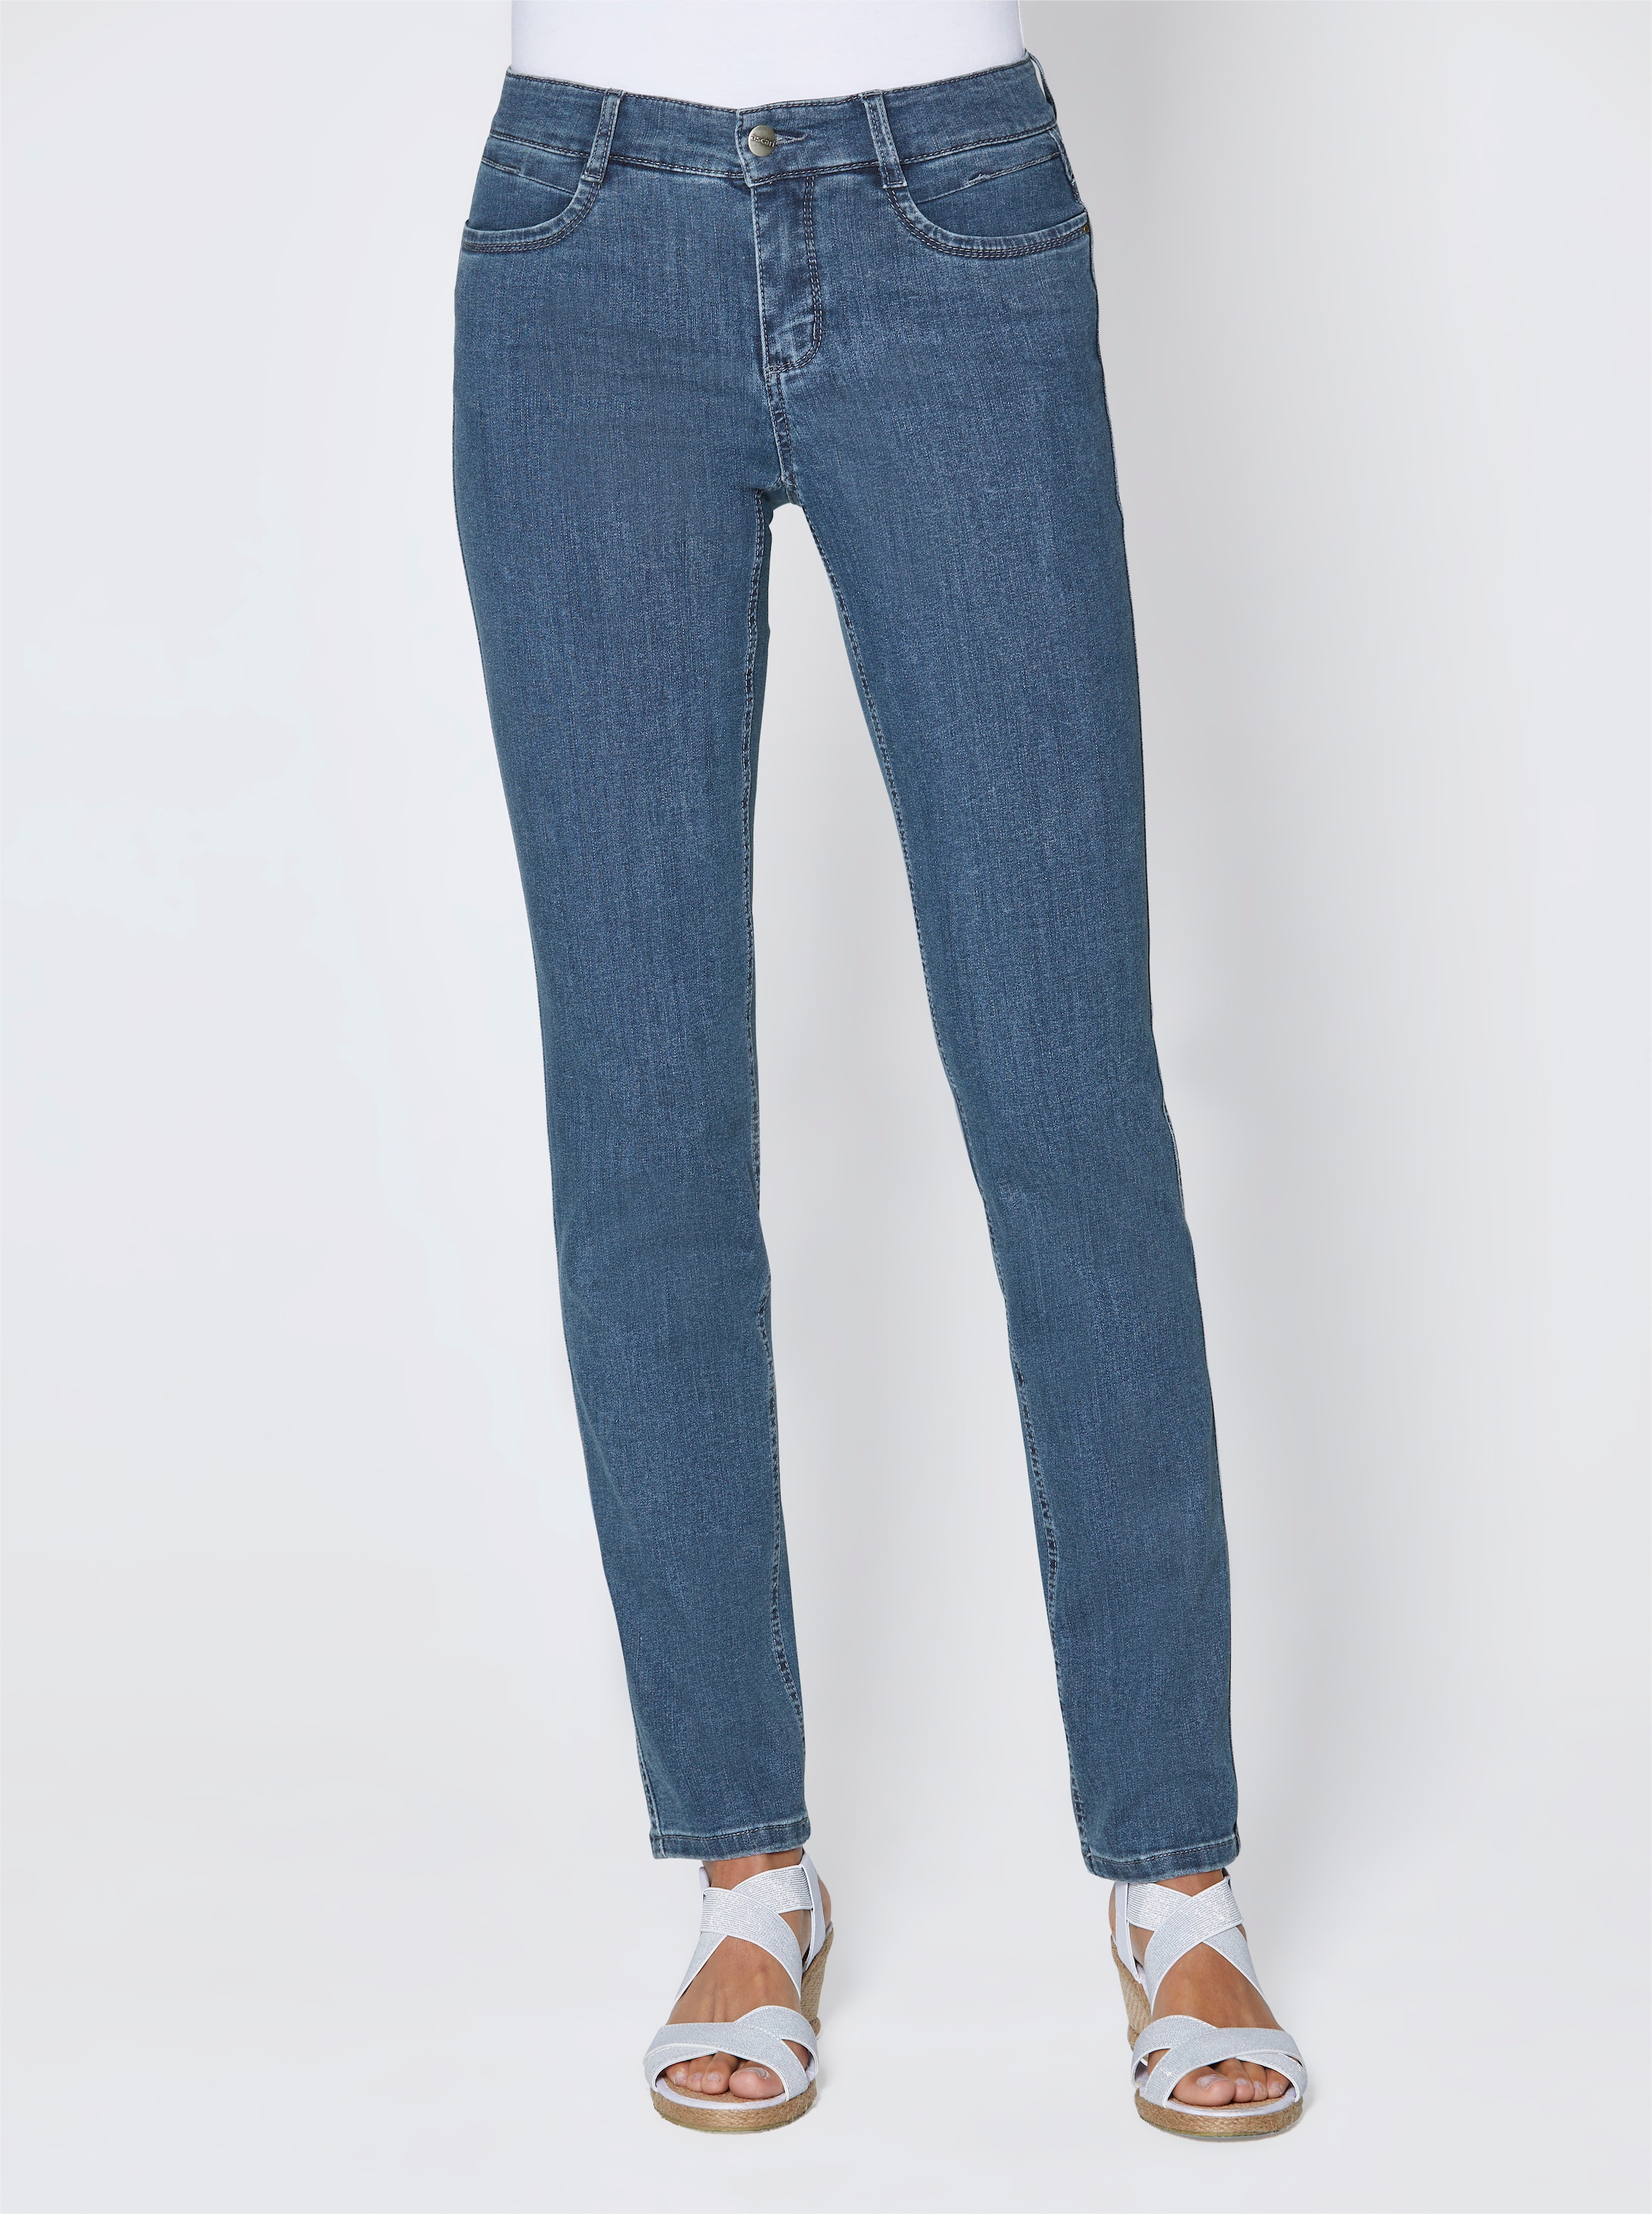 Digitaluhr,Mode günstig Kaufen-Stretch-Jeans in jeansblau von Ascari. Stretch-Jeans in jeansblau von Ascari <![CDATA[Perfekt zur aktuellen Mode! Edel-Jeans in schmaler Röhrenform. Sitzt super und ist herrlich bequem dank der bi-elastischen Superstretch-Qualität. Unser Tipp: Für eine